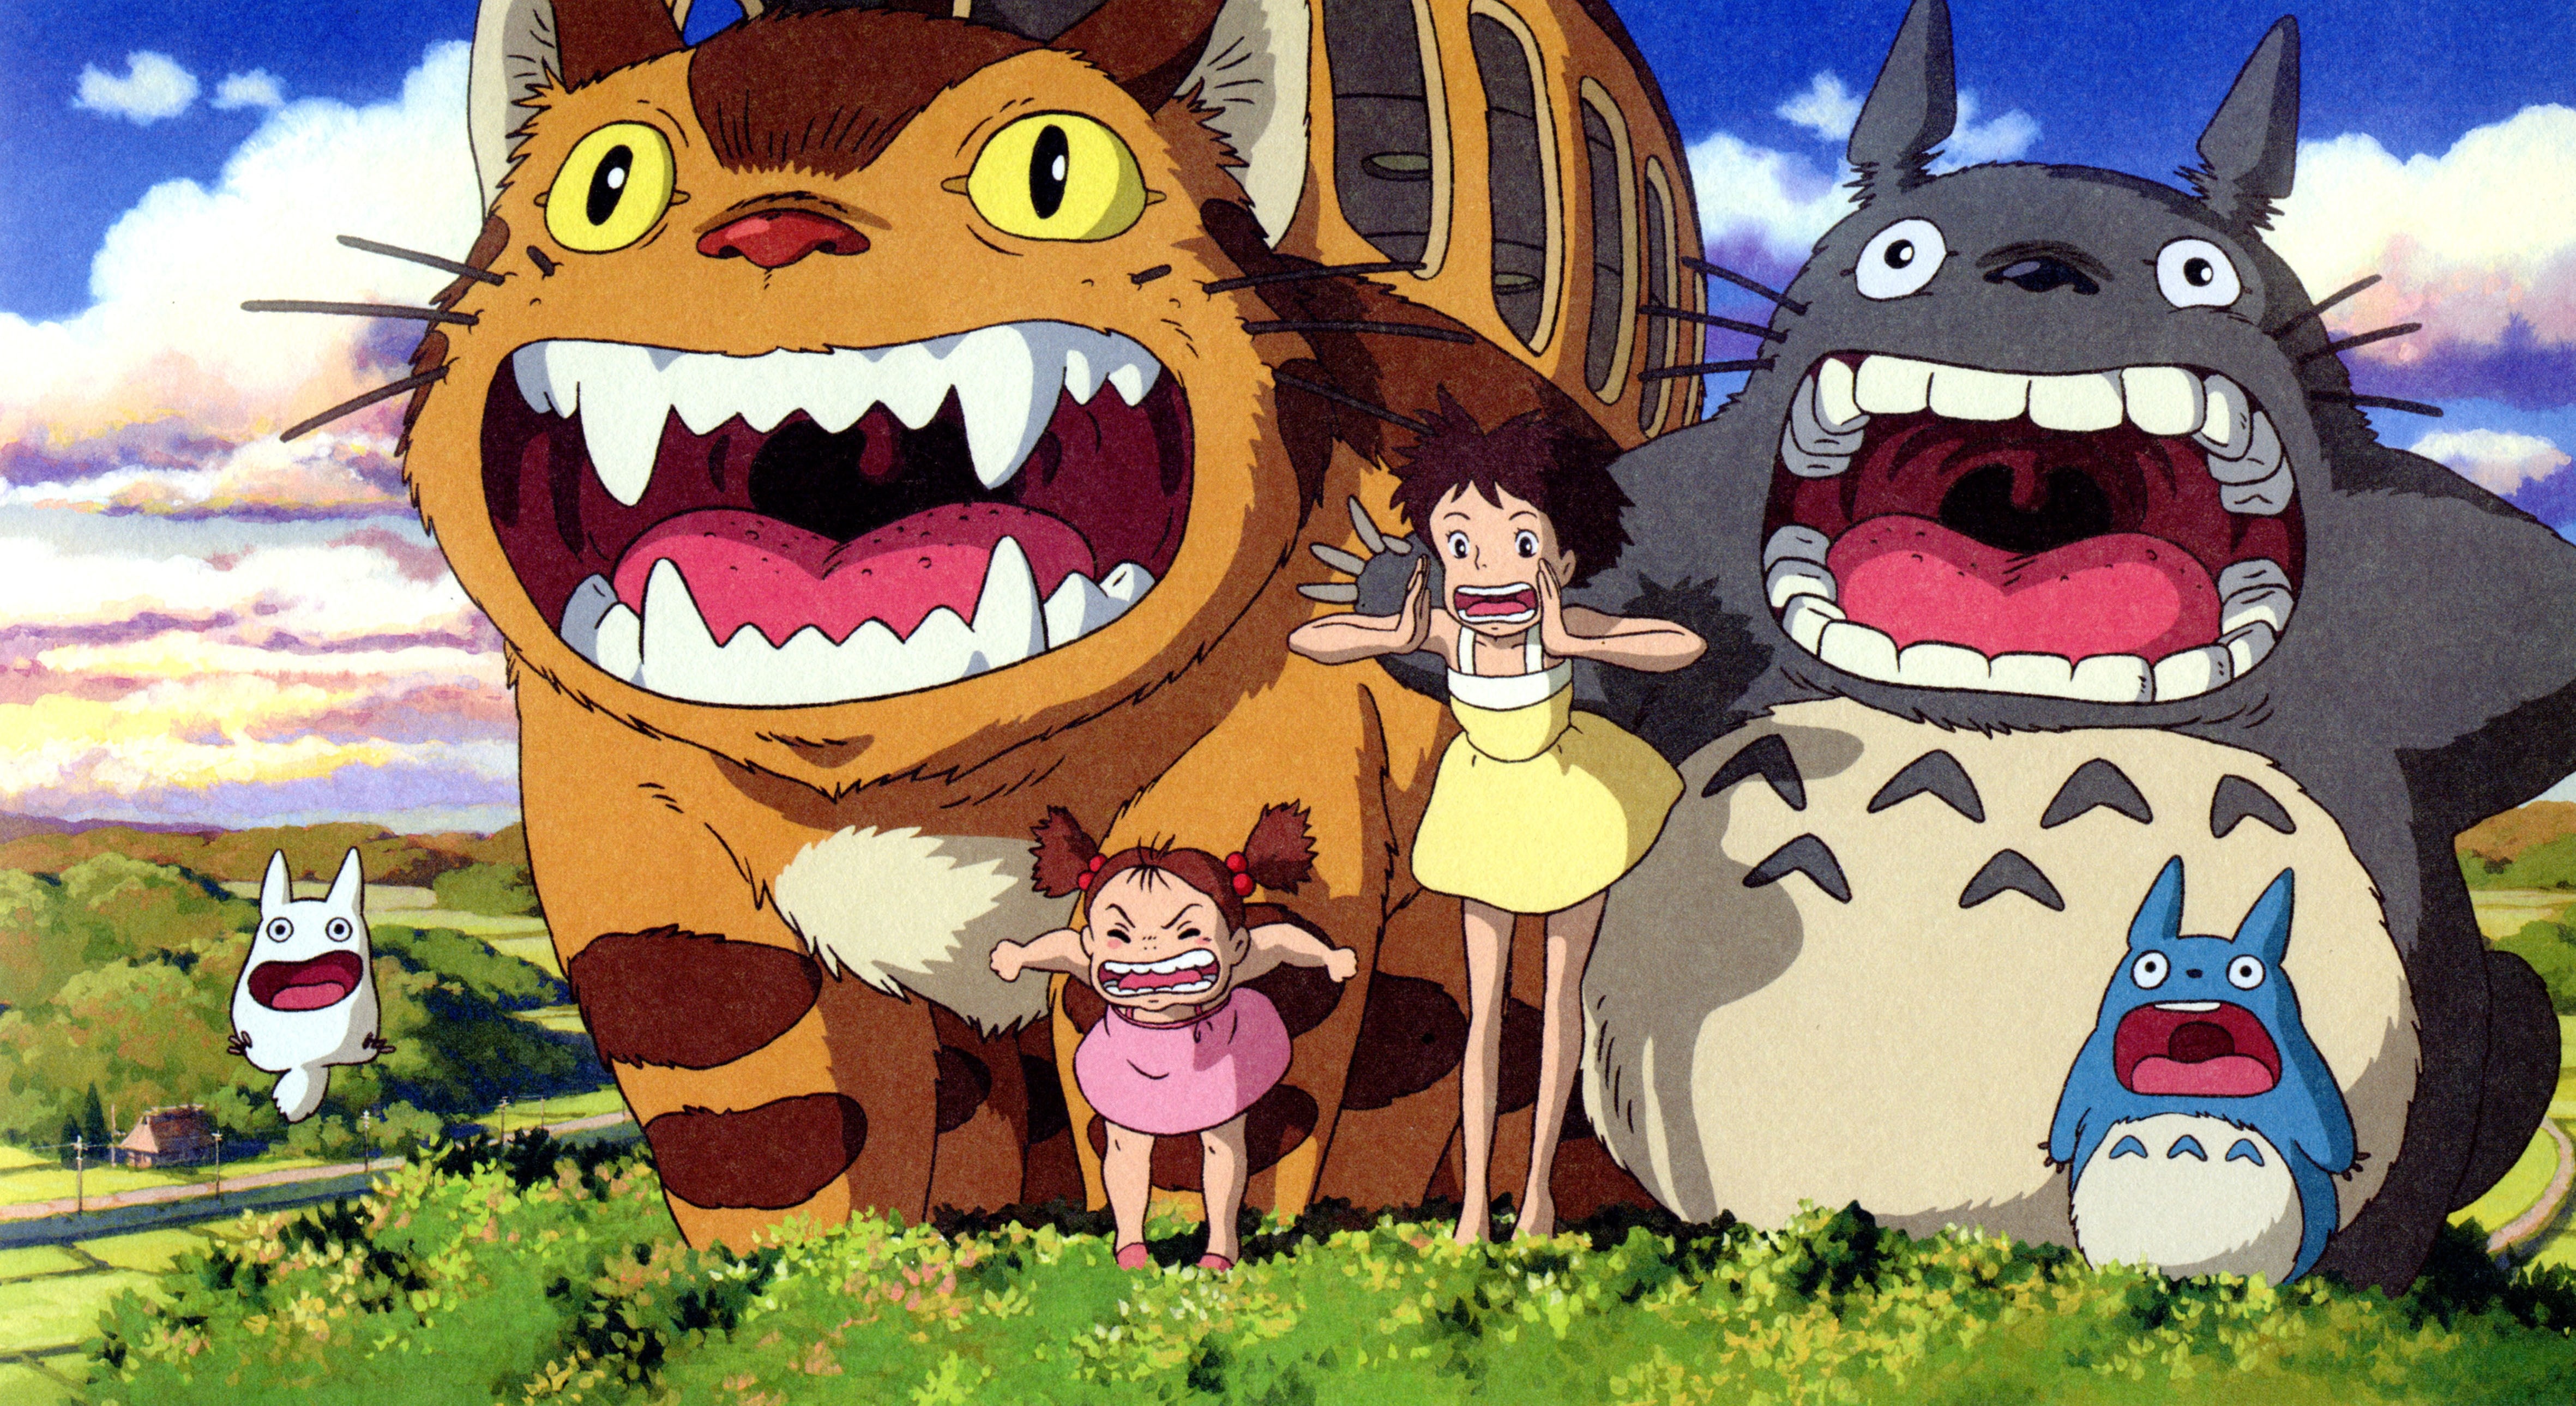 "Il mio amico Totoro", 1988